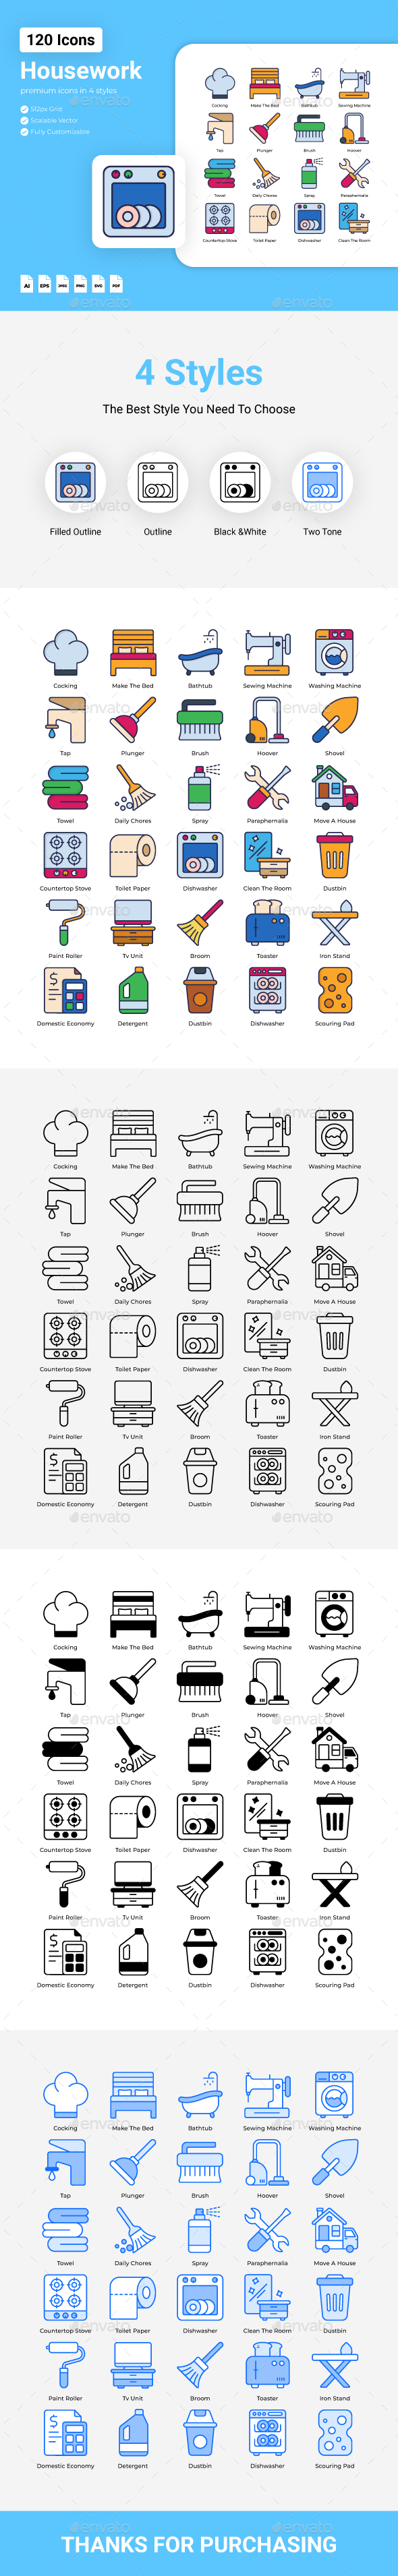 Housework Icons